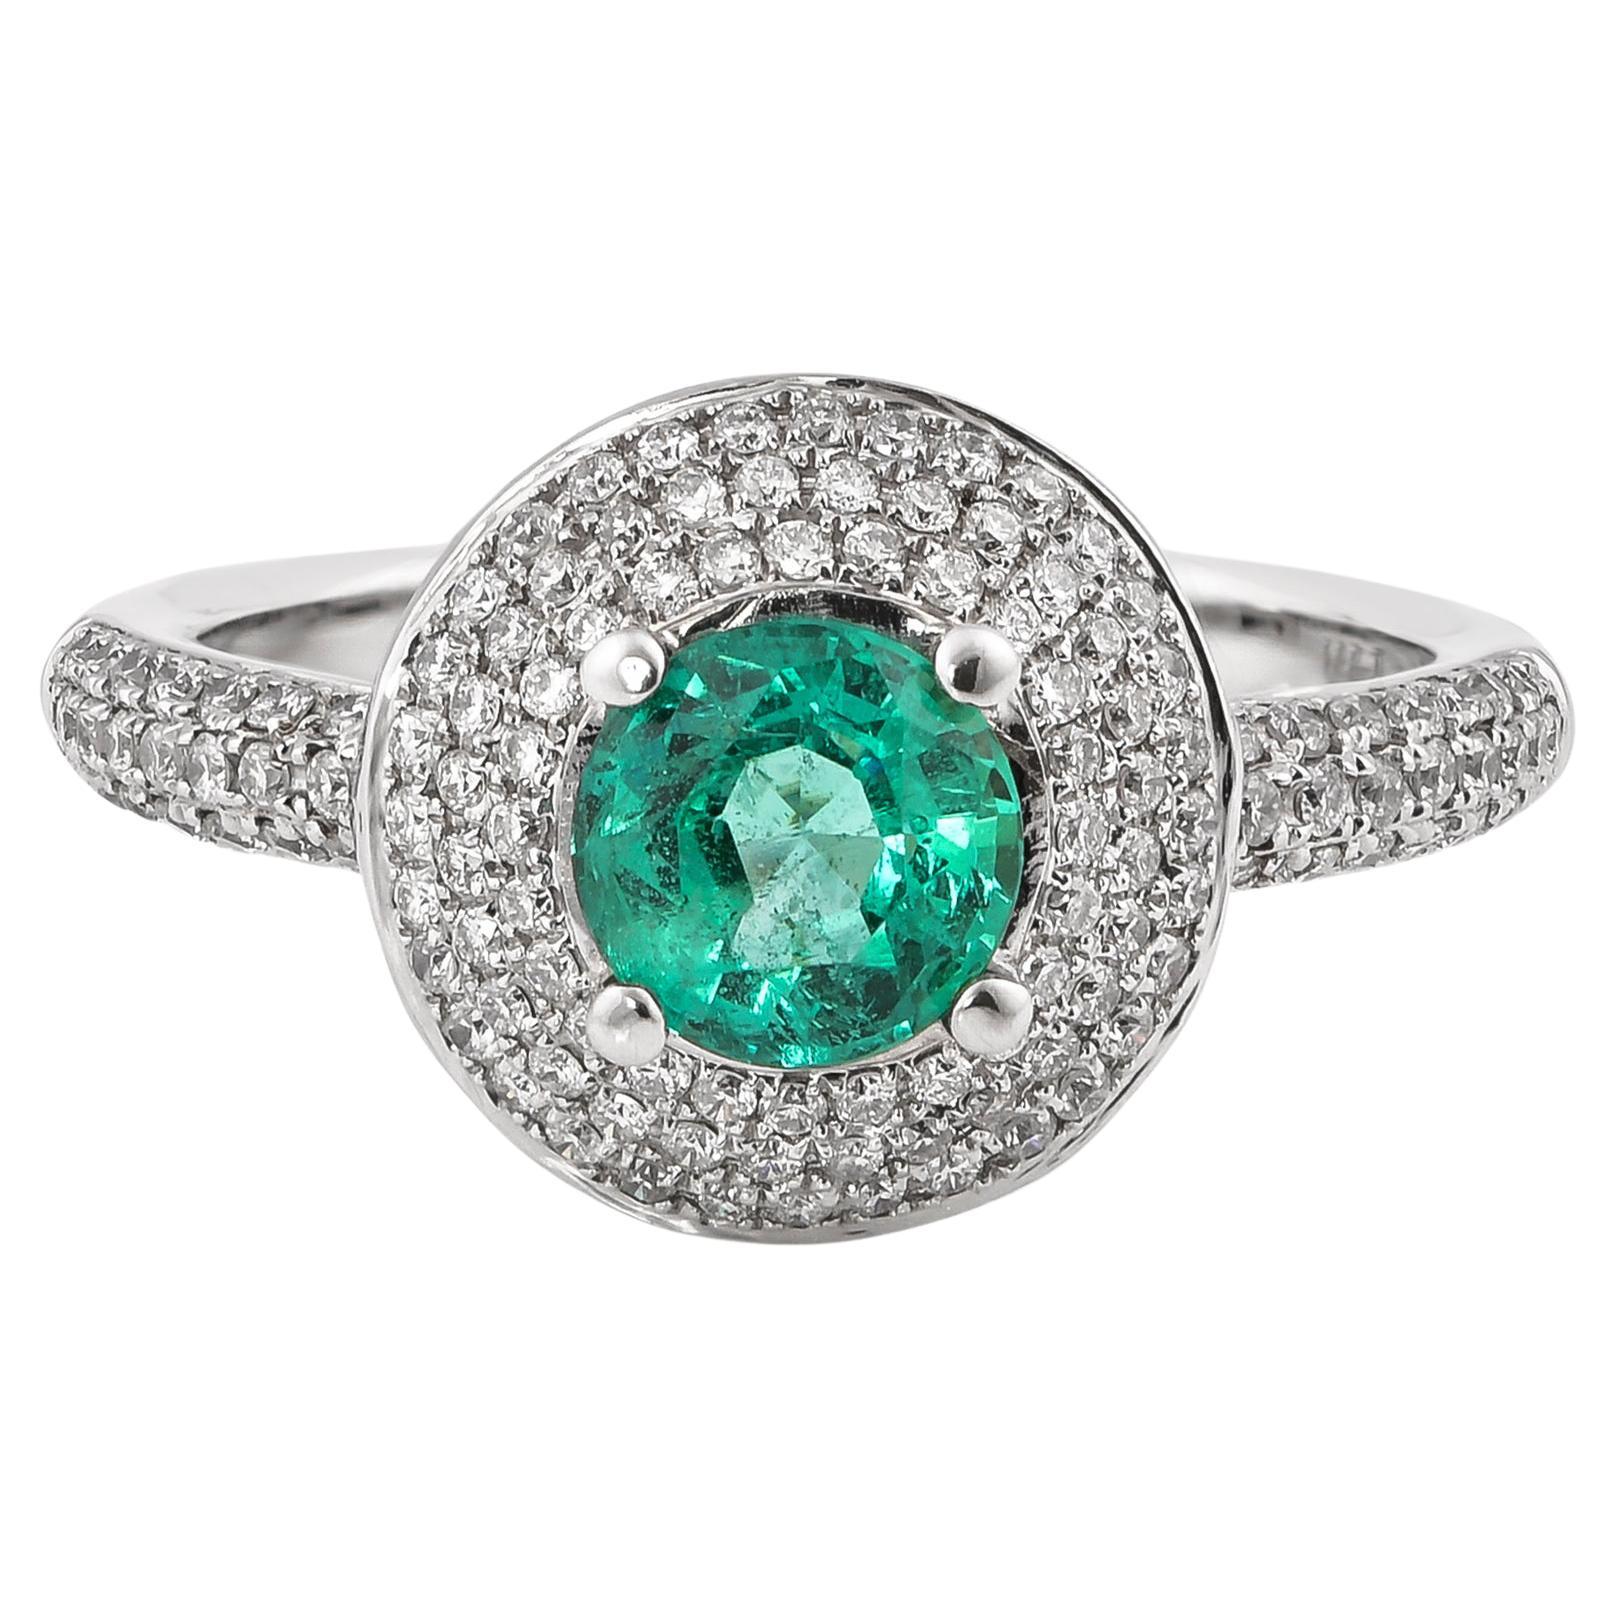 0.6 Carat Emerald and White Diamond Ring in 14 Karat White Gold